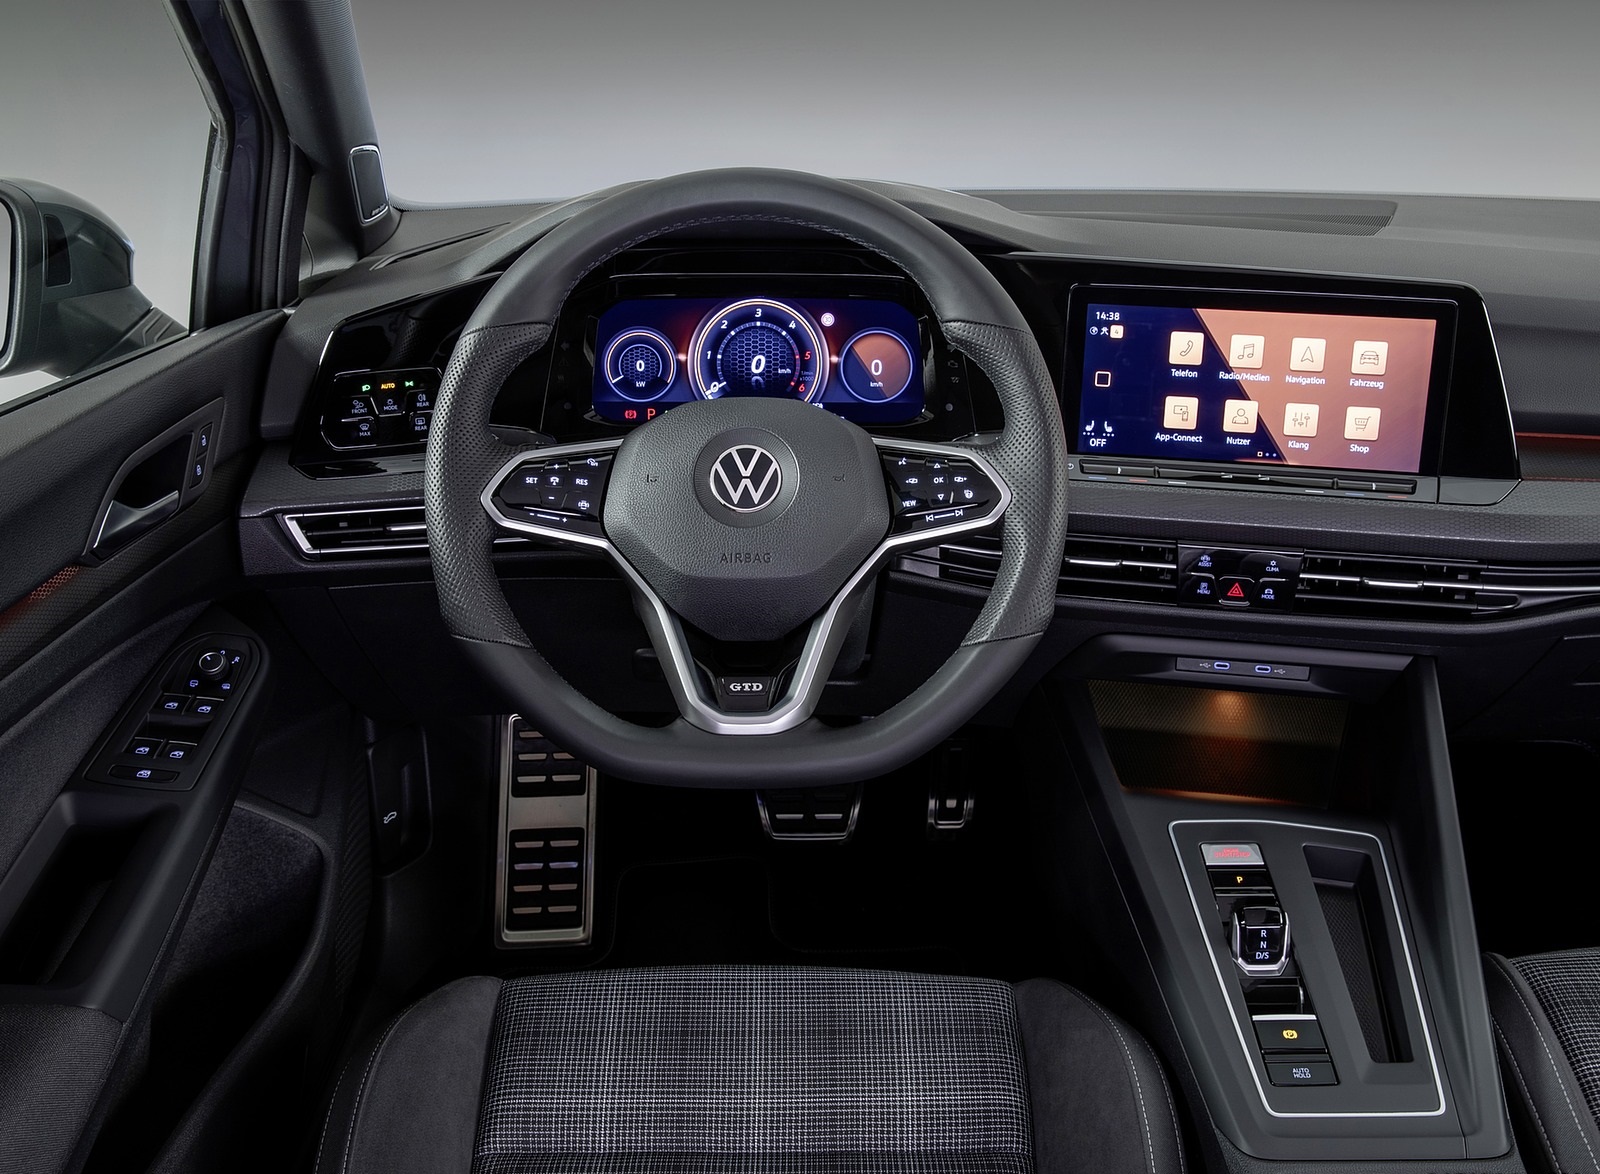 2021 Volkswagen Golf GTD Interior Cockpit Wallpapers #12 of 15